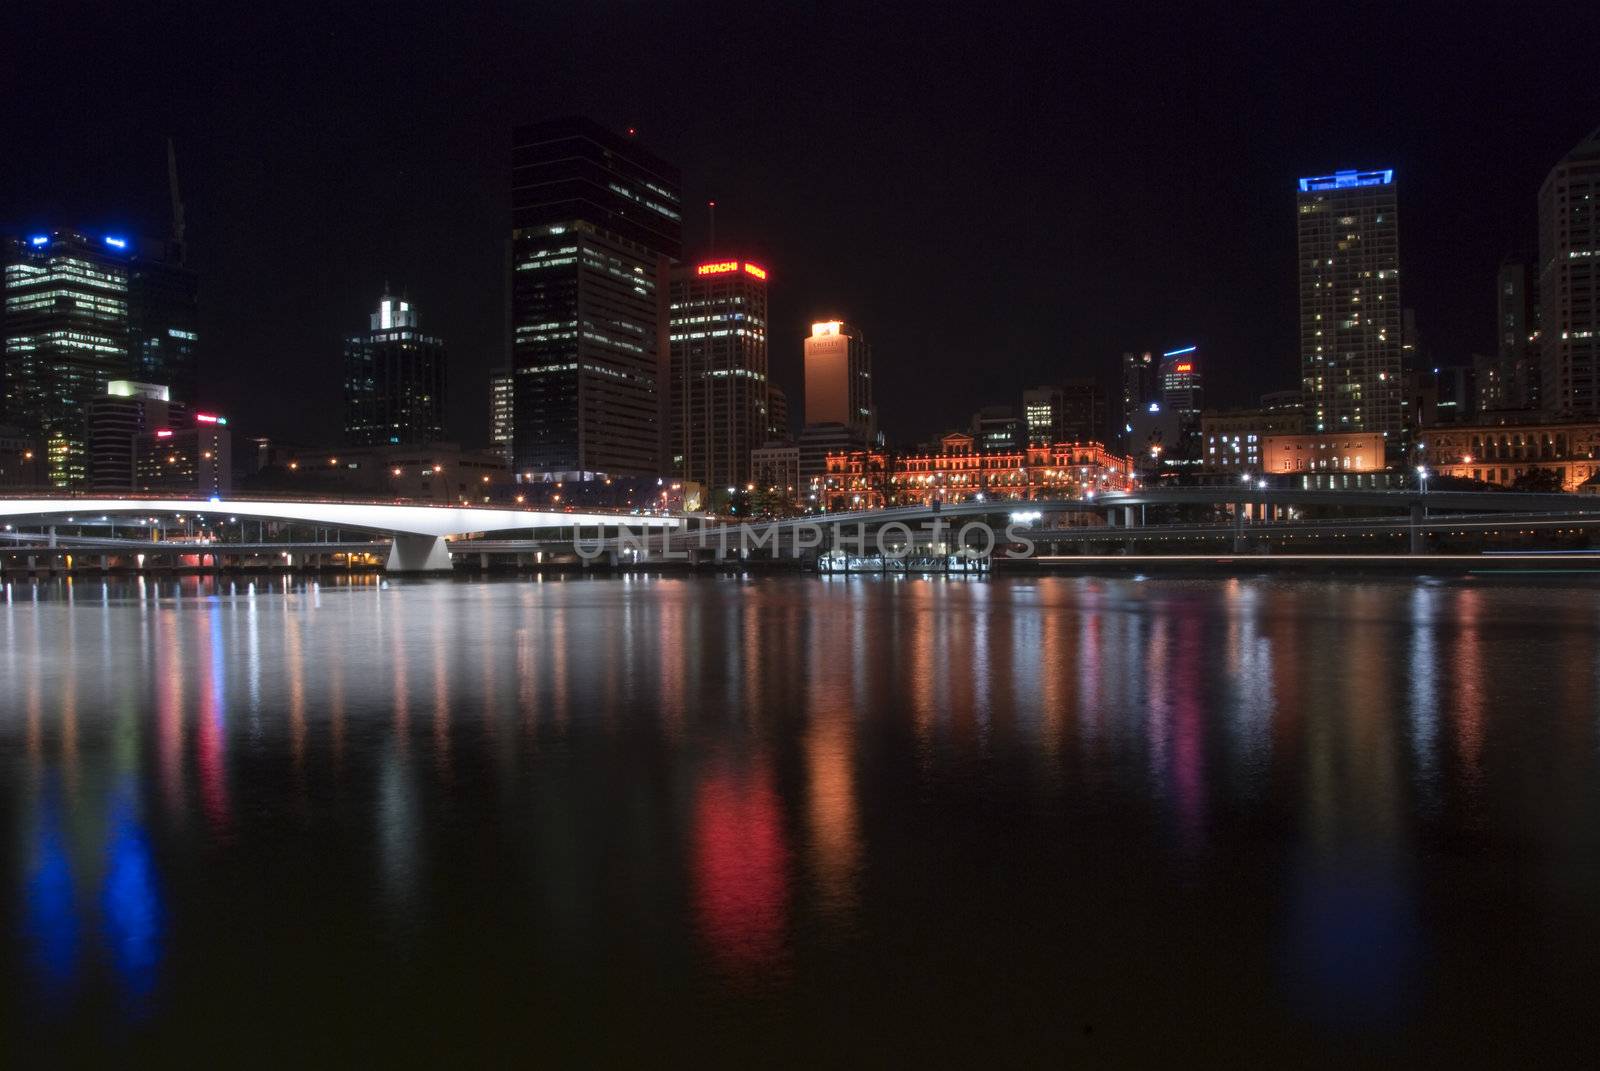 Brisbane River by Night, Australia, August 2009 by jovannig